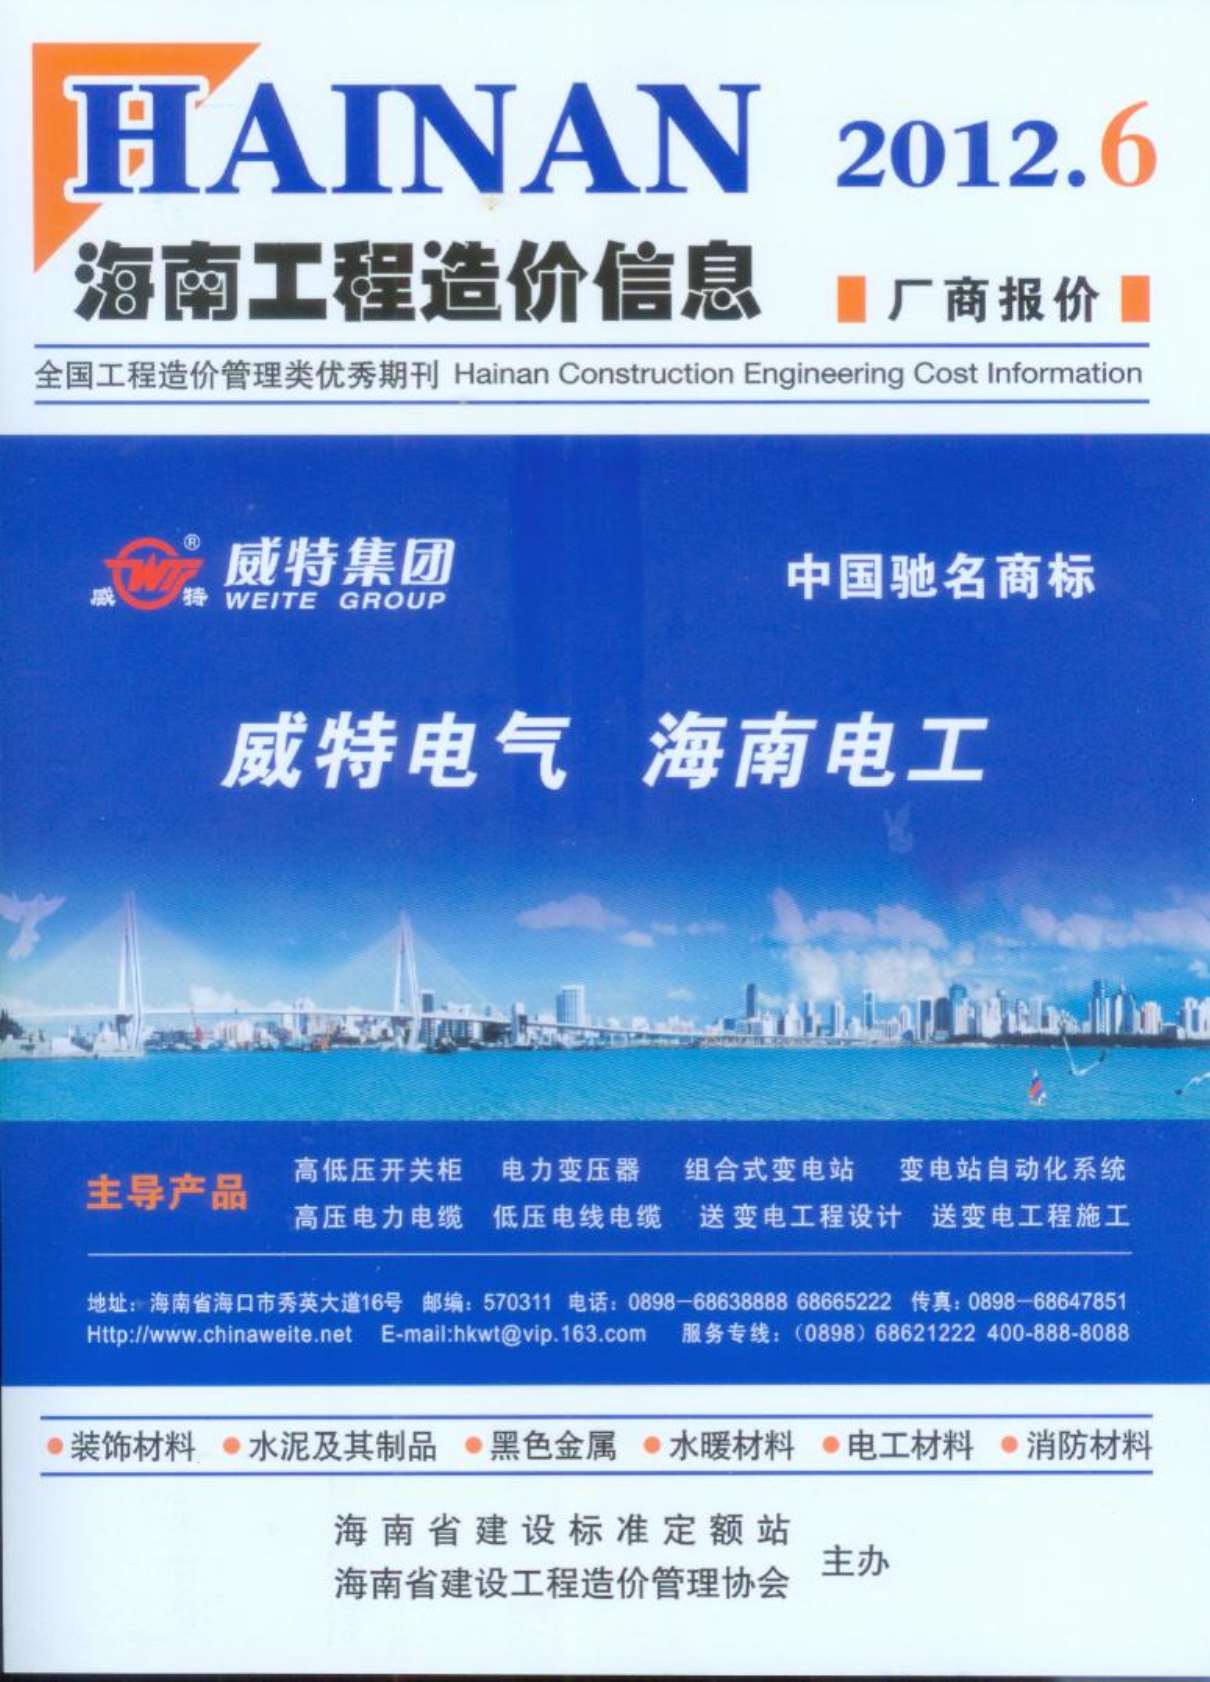 海南省2012年6月工程结算依据